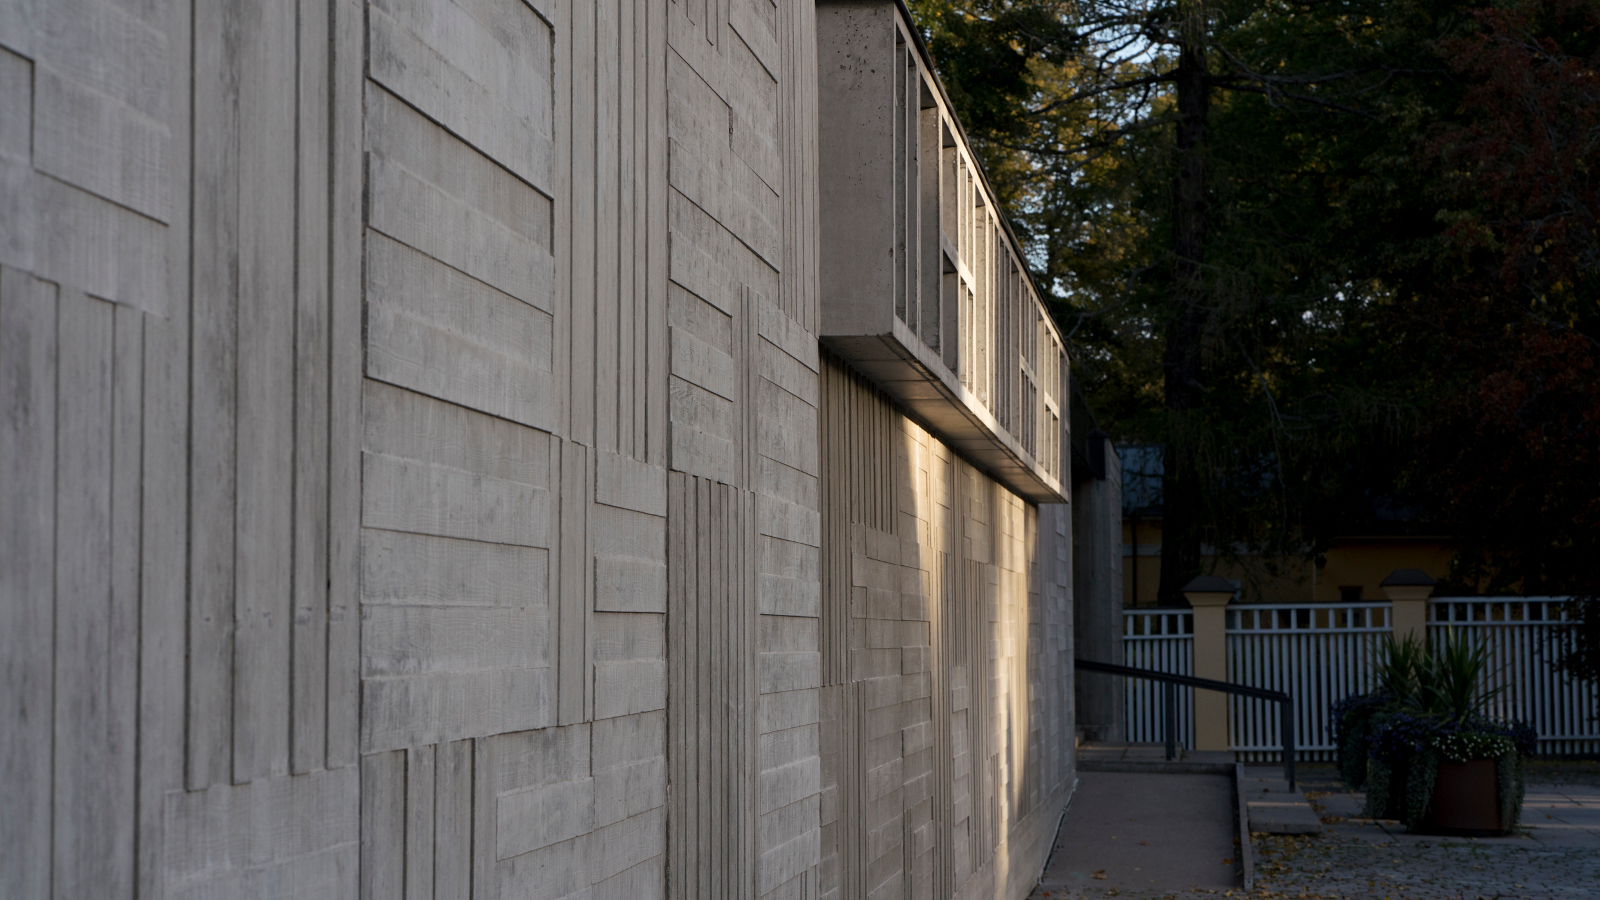 Kuvassa on harmaata betonista ulkoseinää, jossa pysty- ja vaakasuoria pintakohotuksia.  Oikealla ylhäällä on pieni hylly.